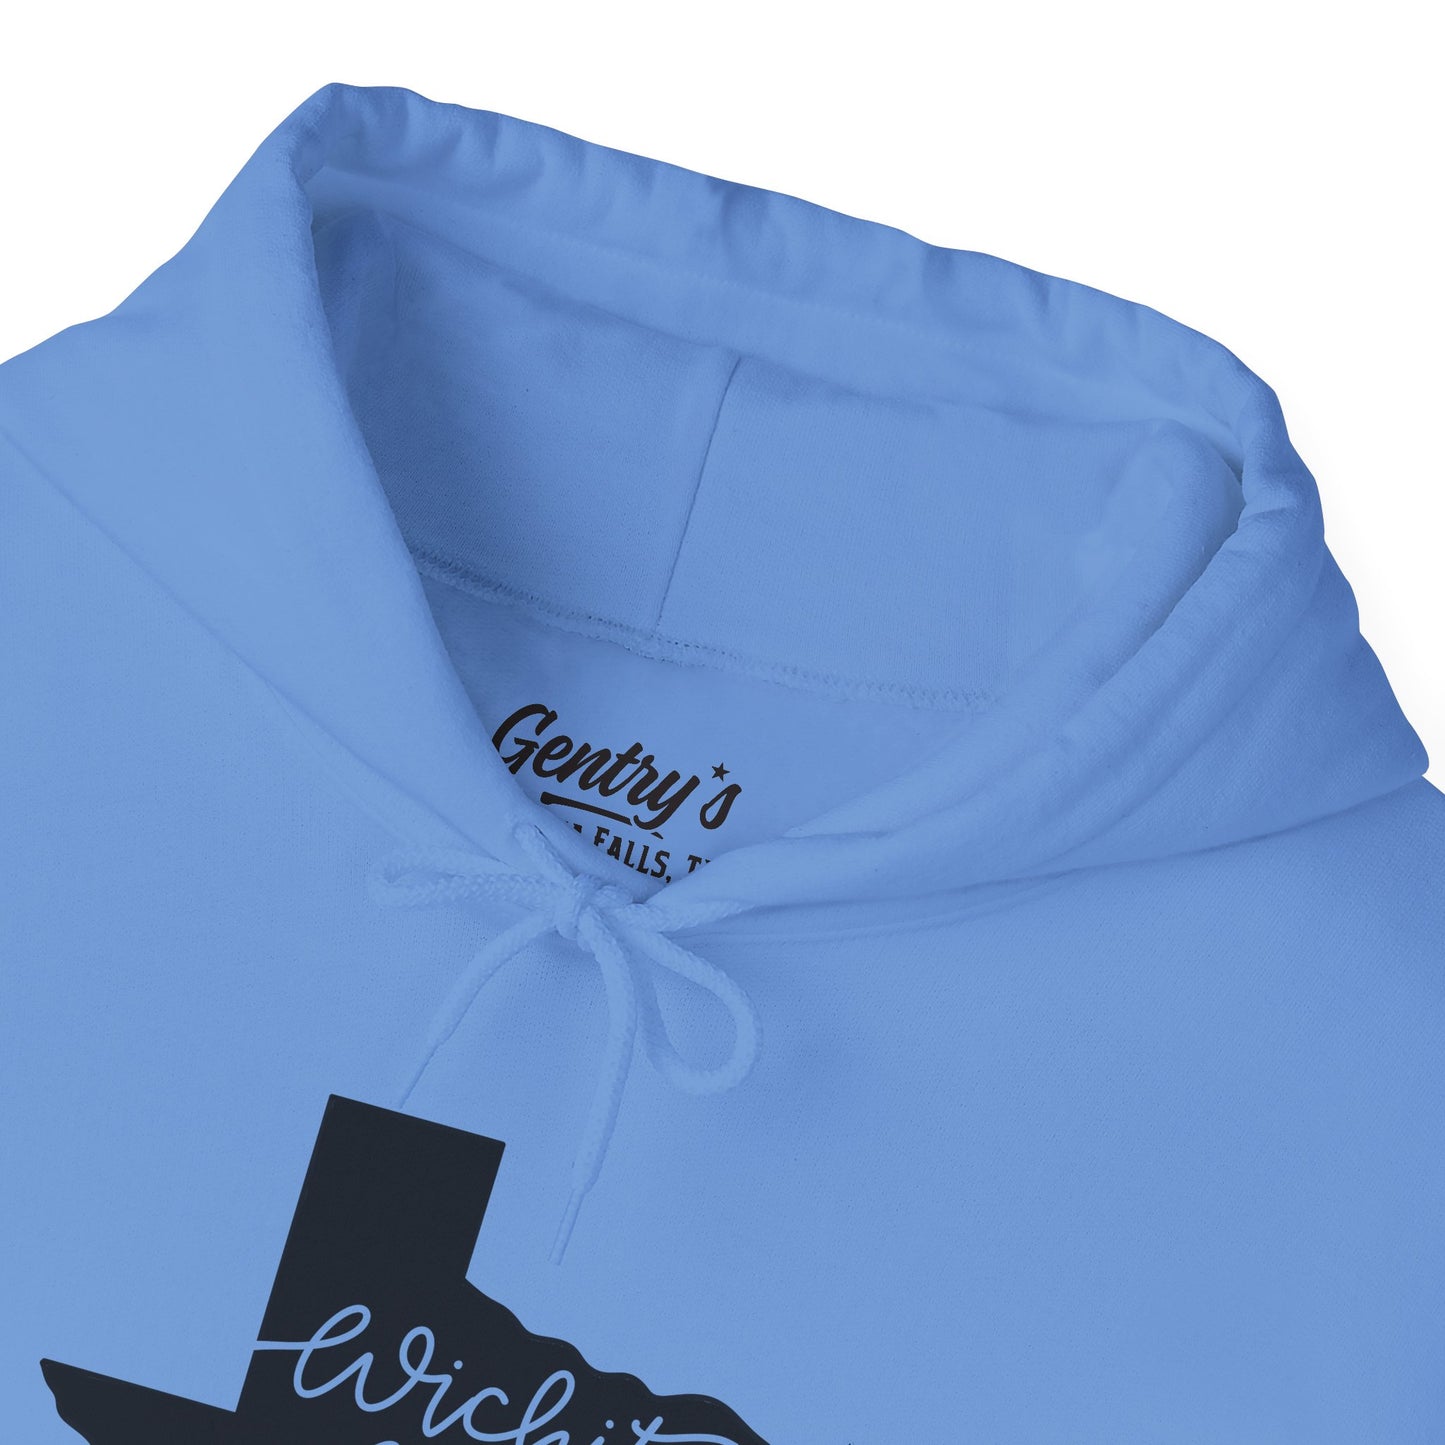 Wichita Falls Script Unisex Heavy Blend™ Hooded Sweatshirt